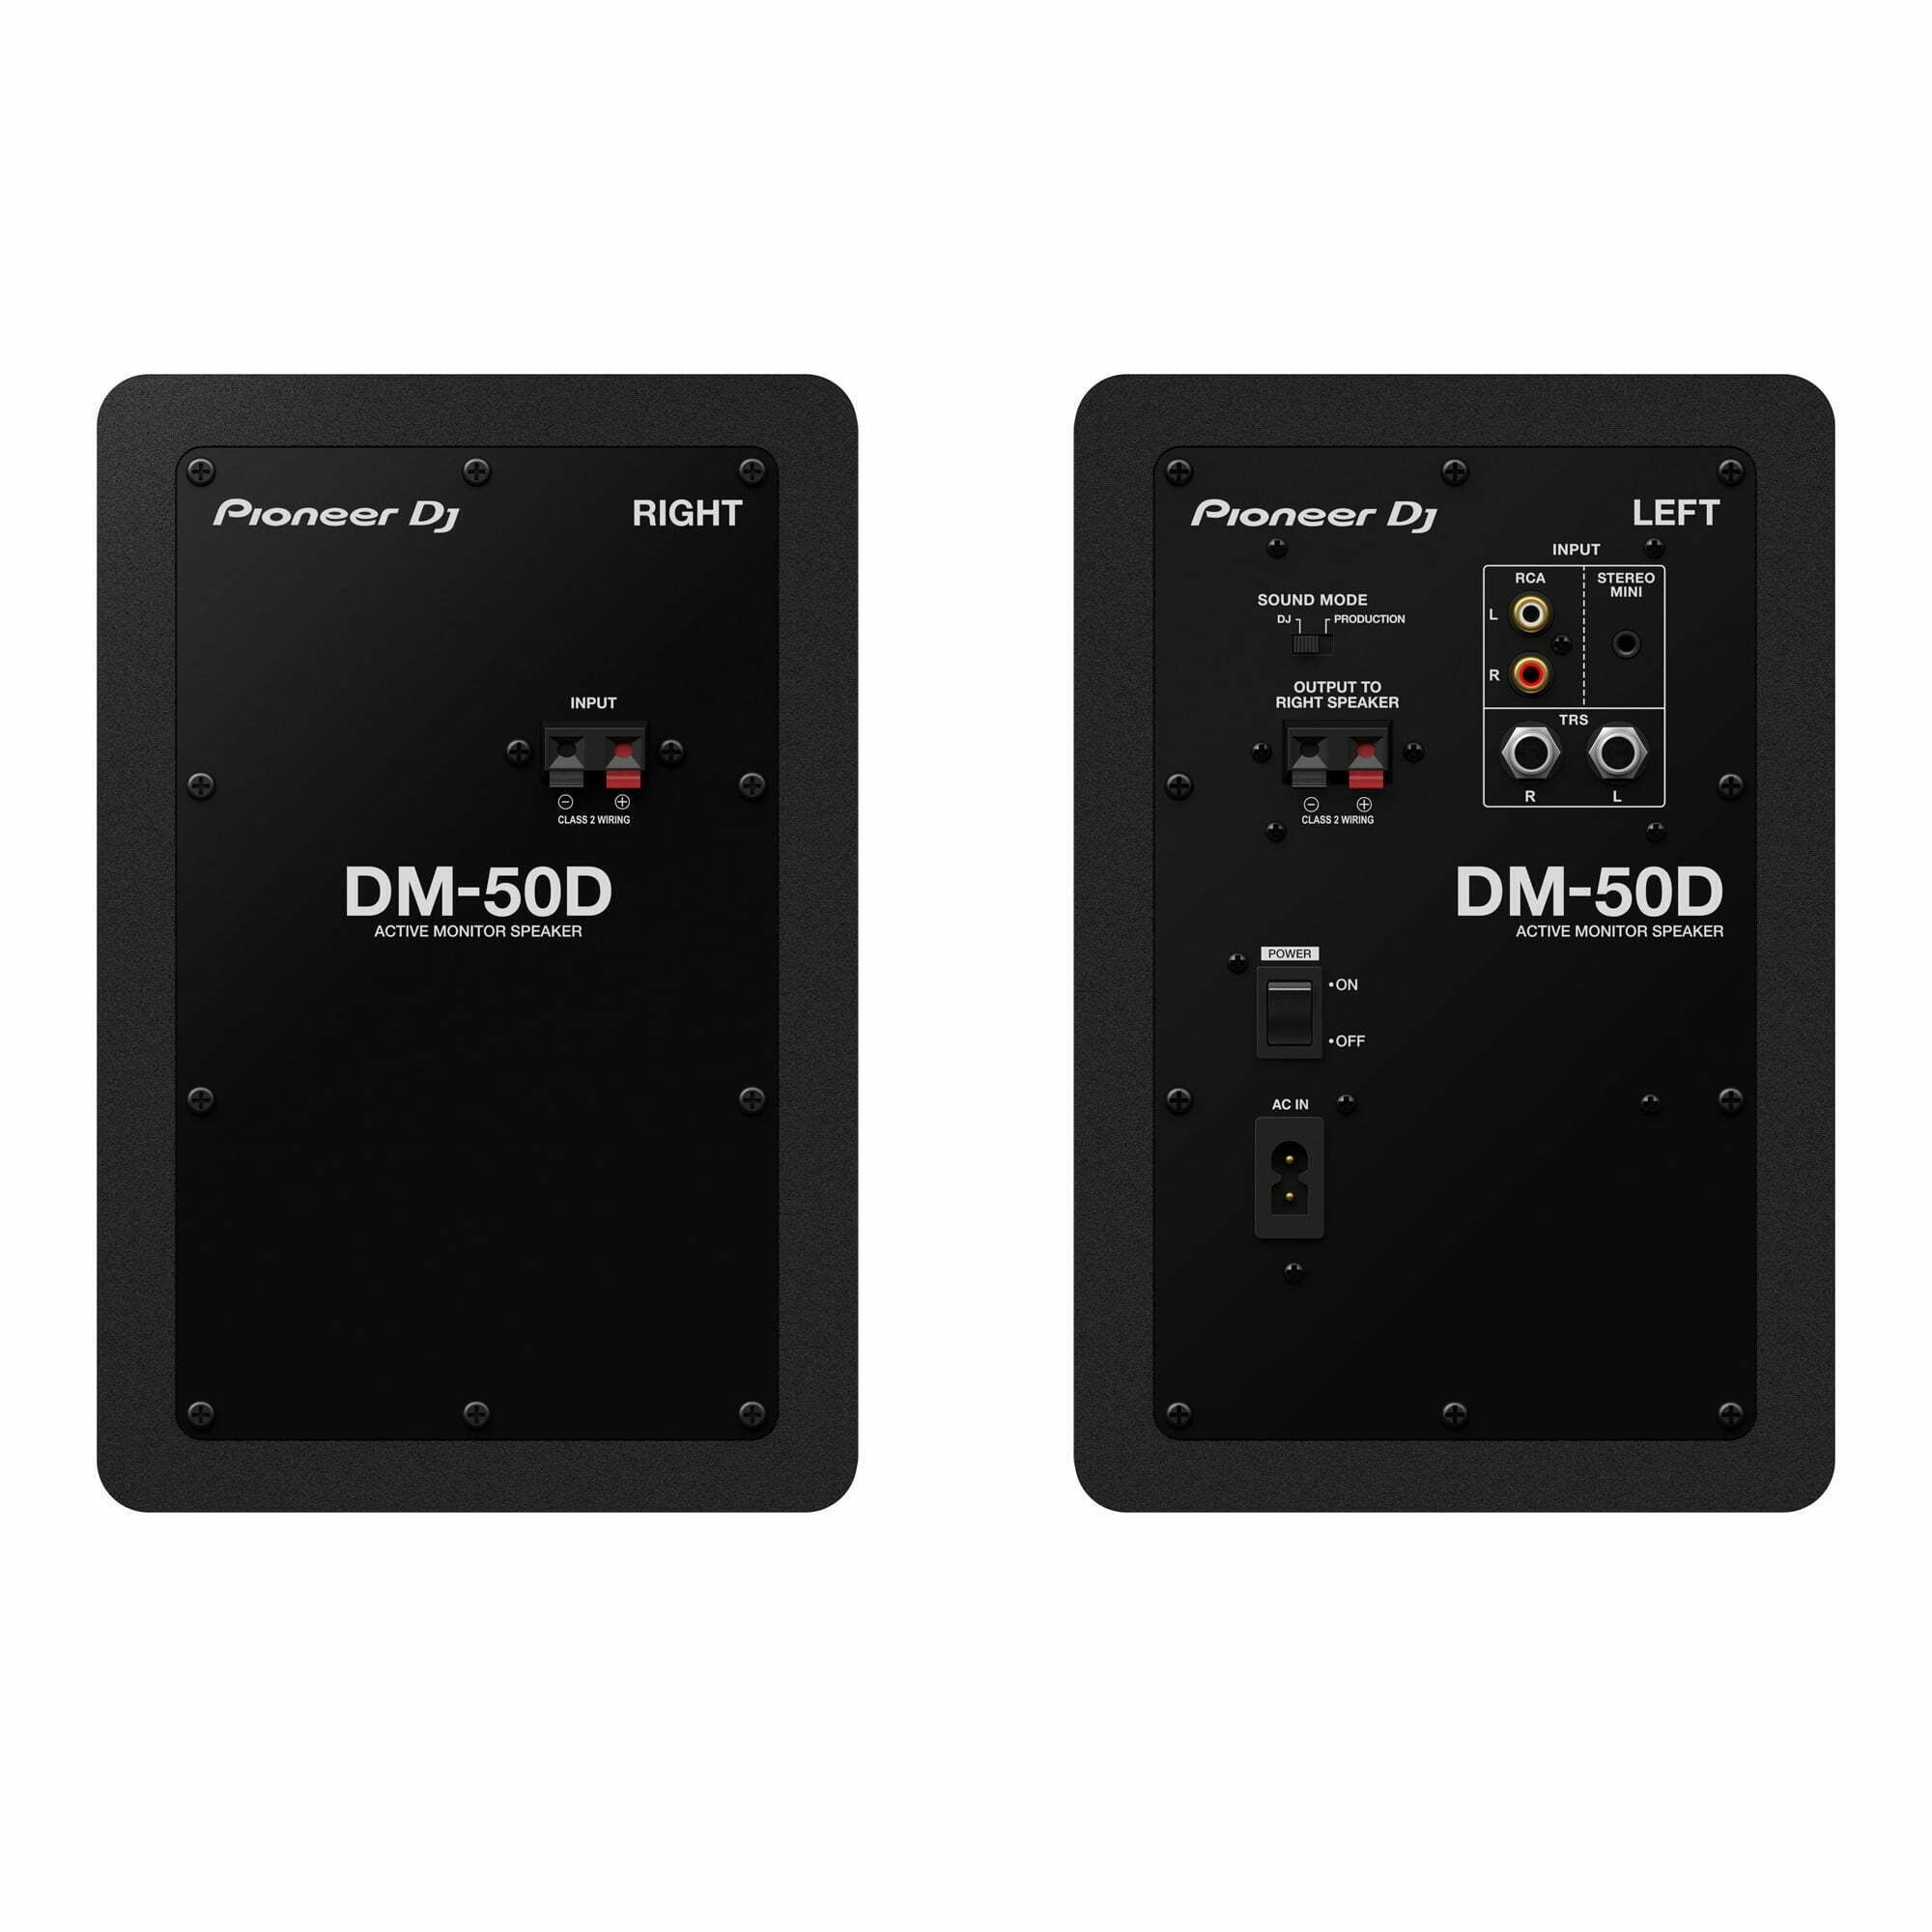 DM-50D